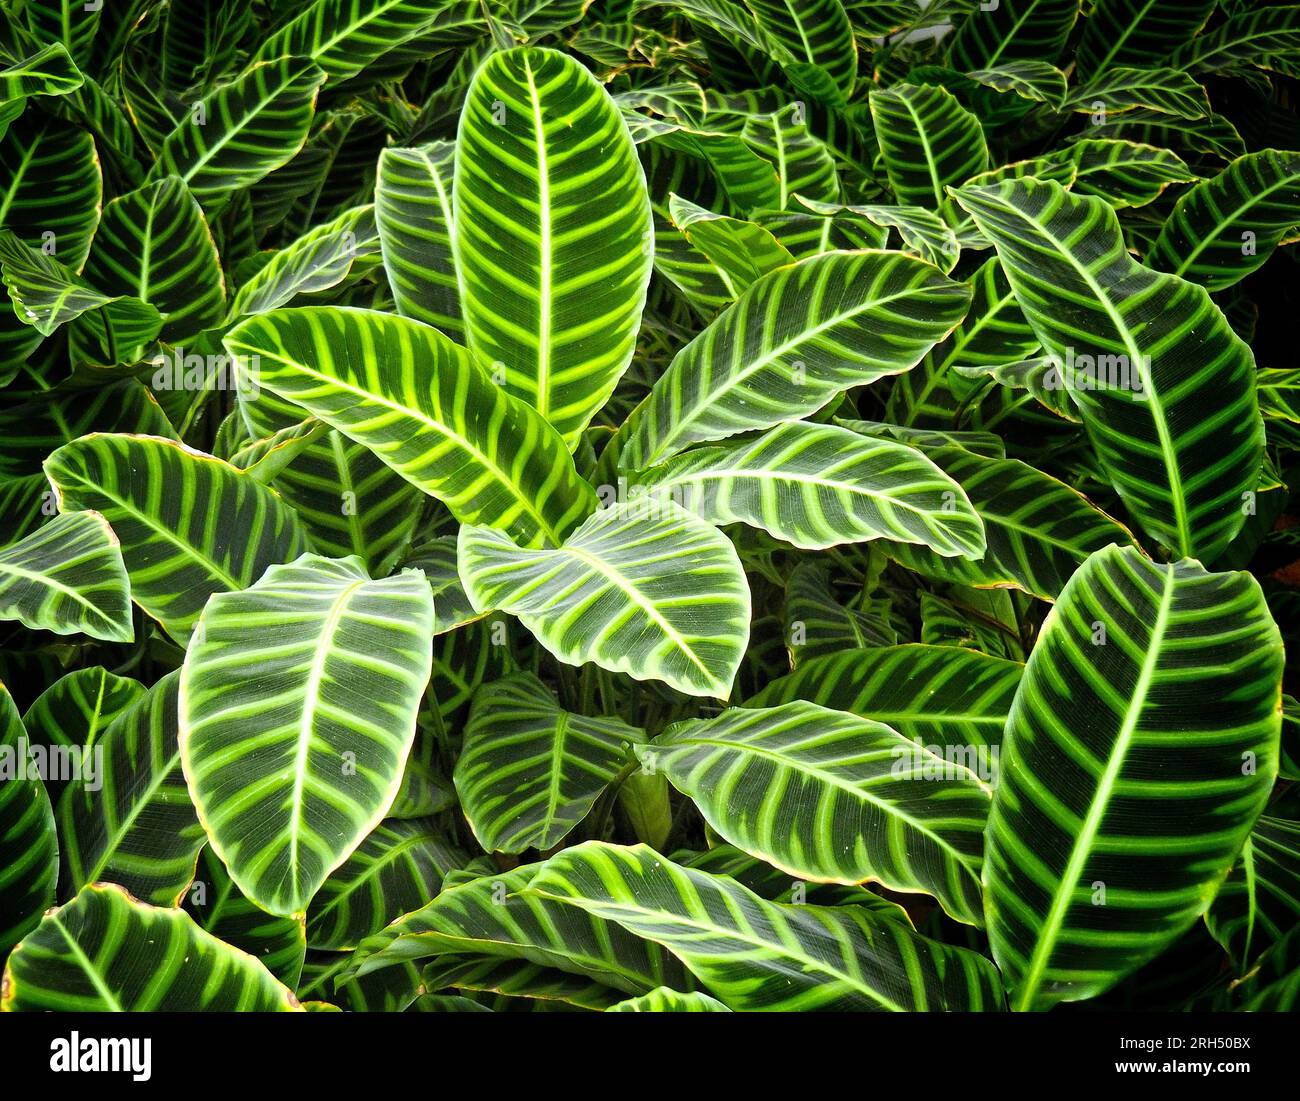 La bellezza delle foglie verdi con strisce bianche Foto Stock